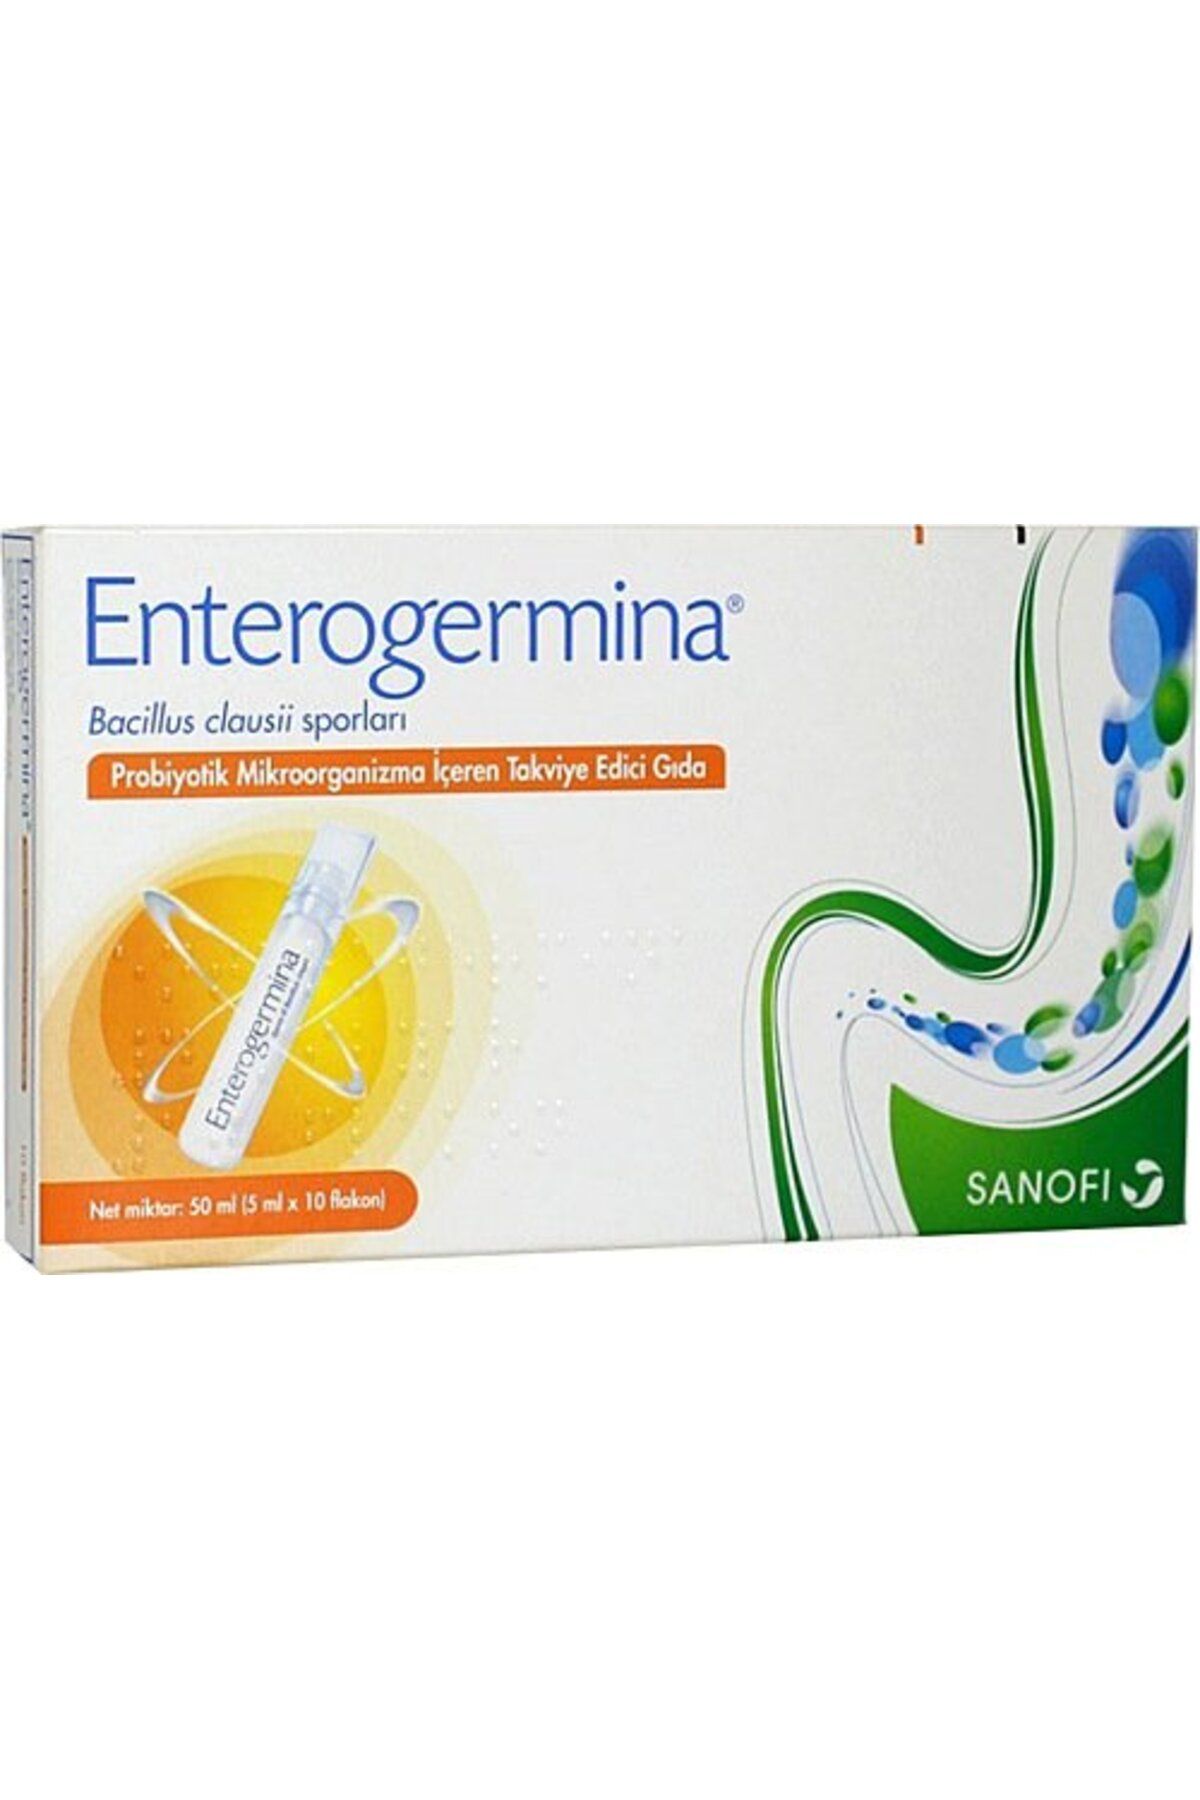 Enterogermina Yetişkinler Için 5 ml X 10 Flakon